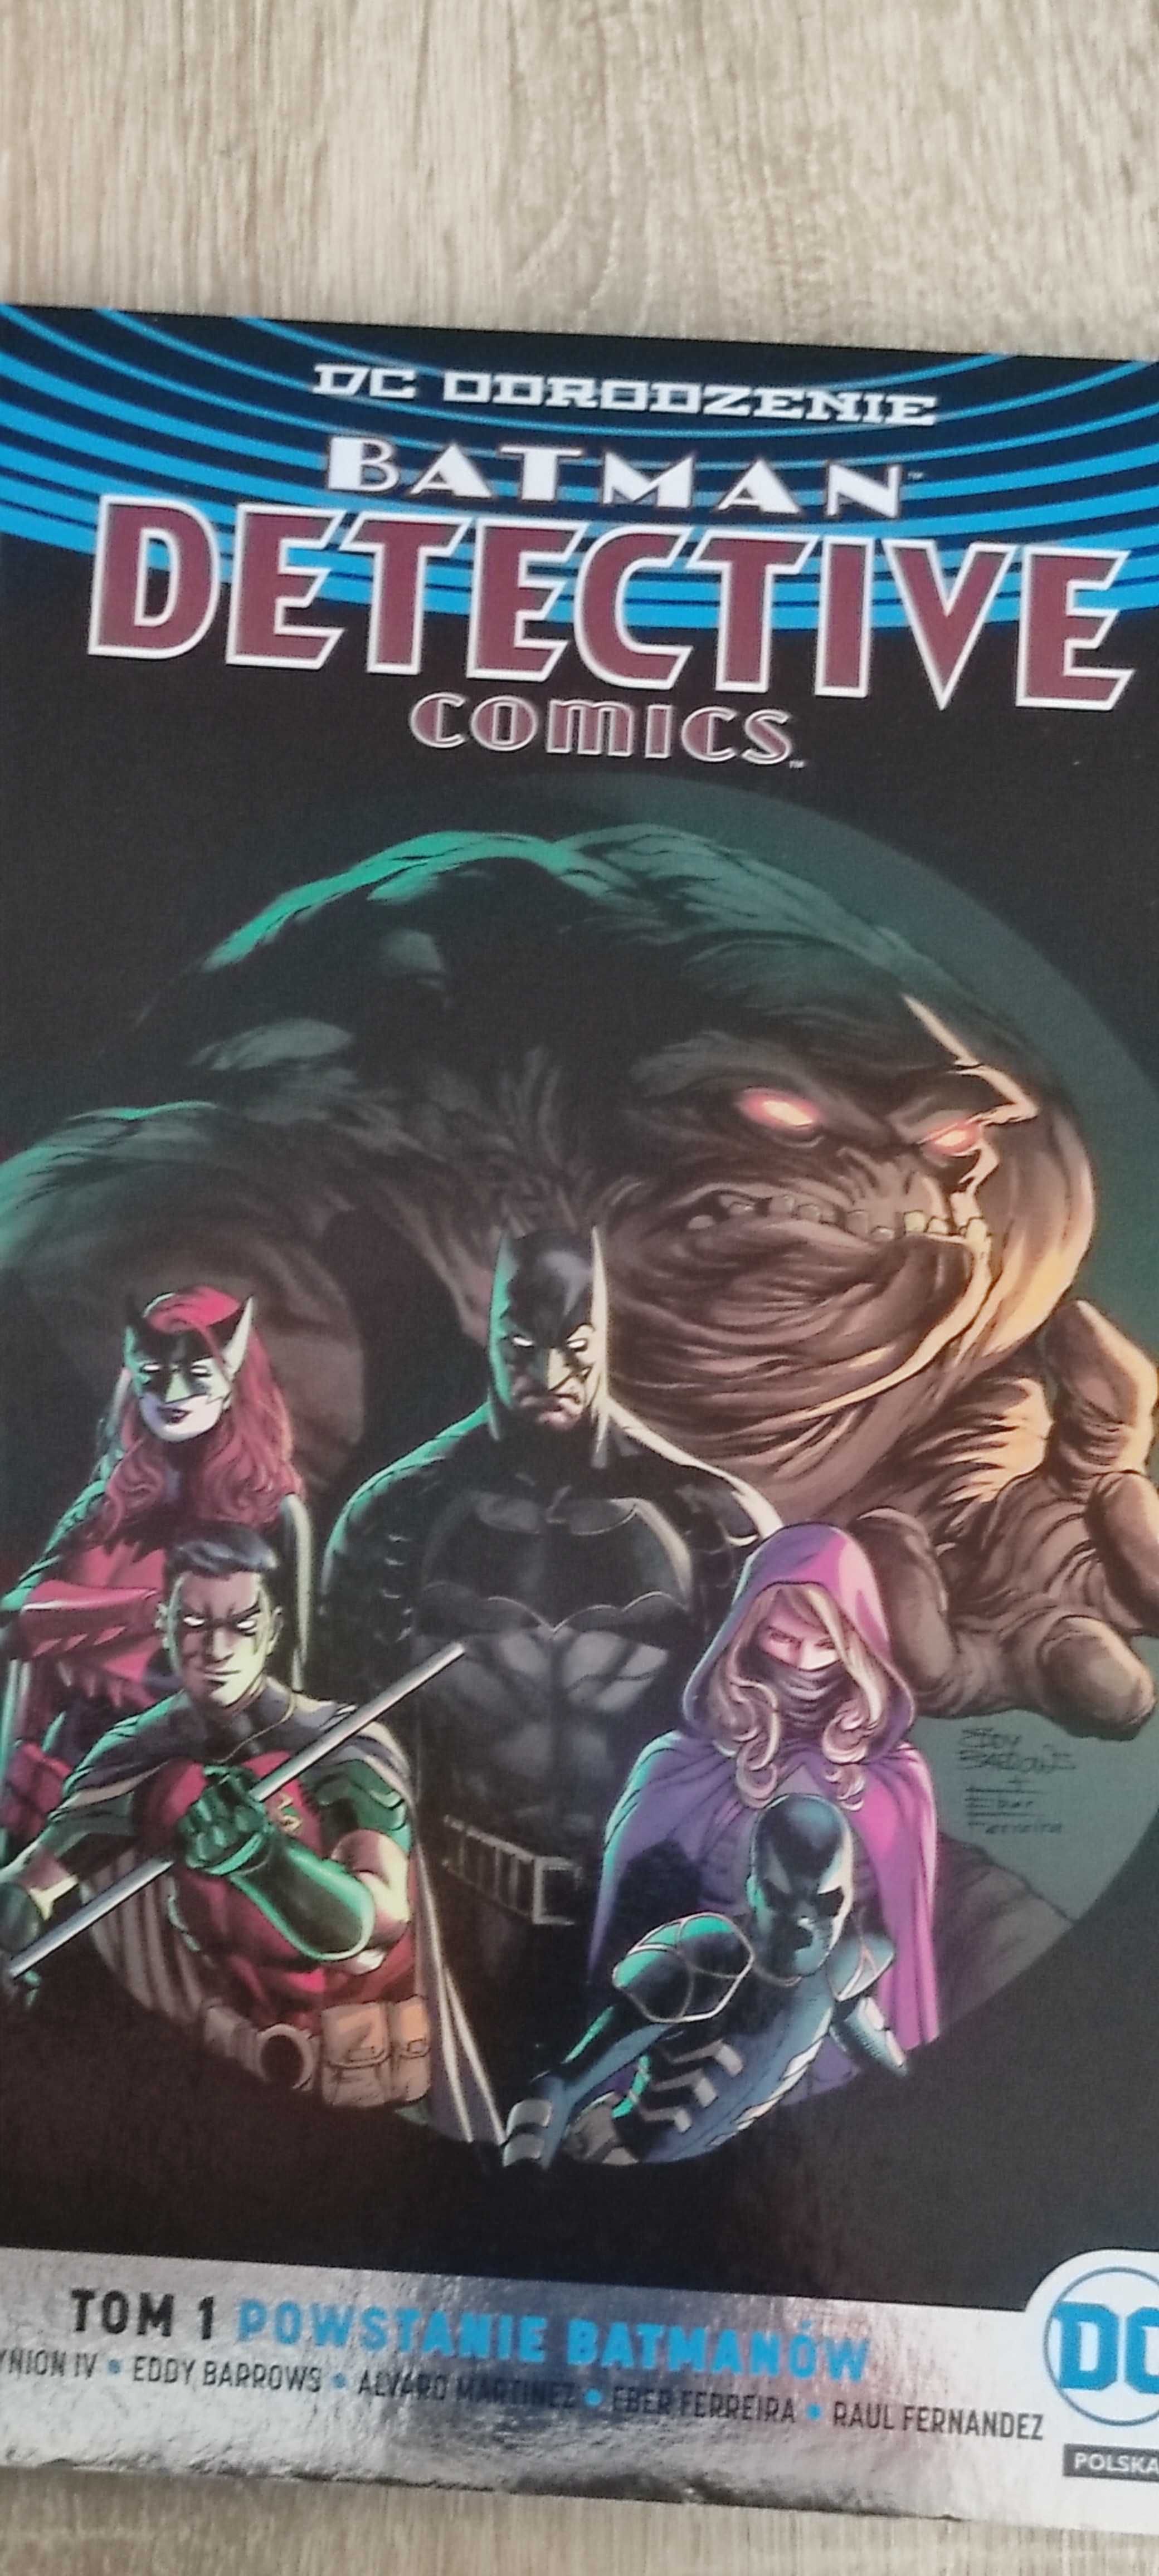 Sprzedam paczkę komiksów DC